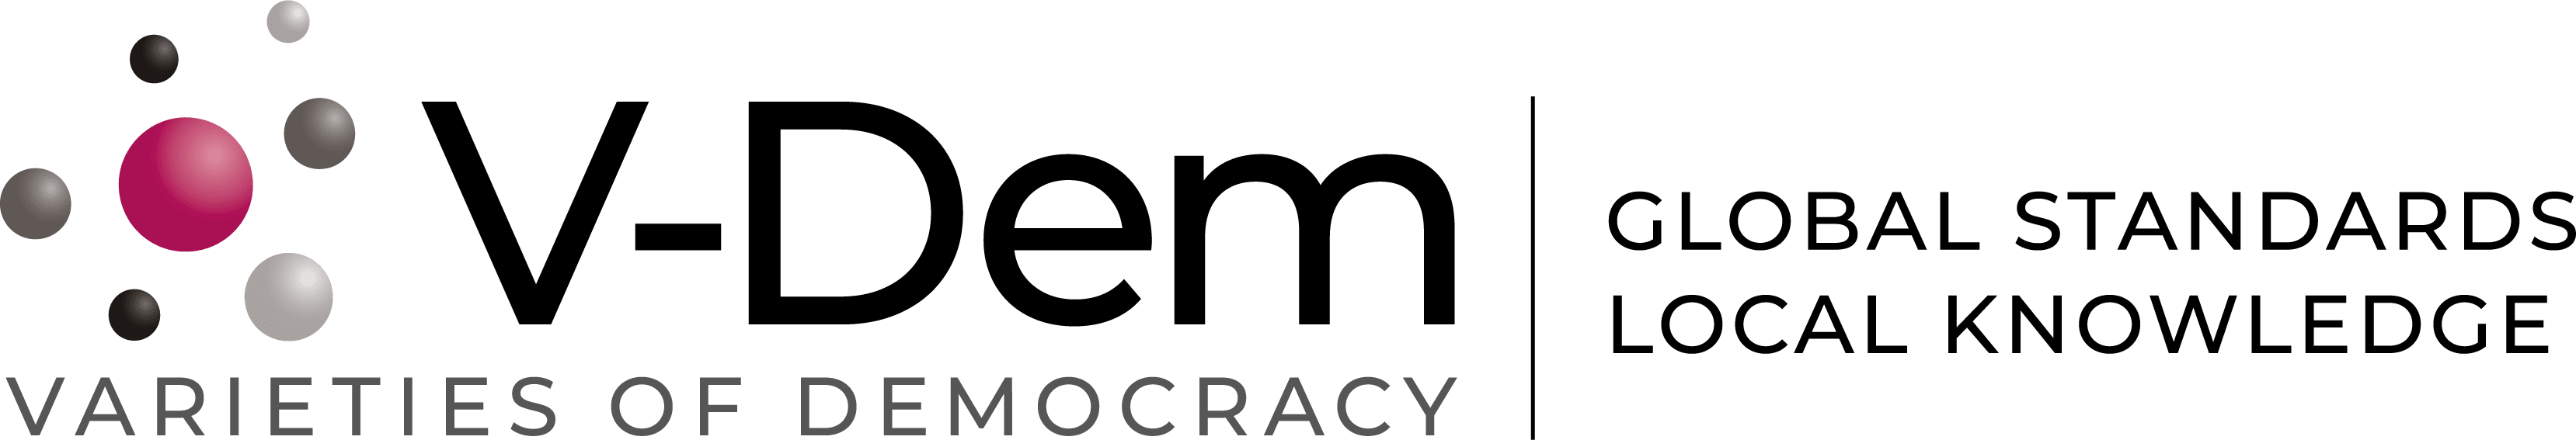 Varieties of Democracy logo